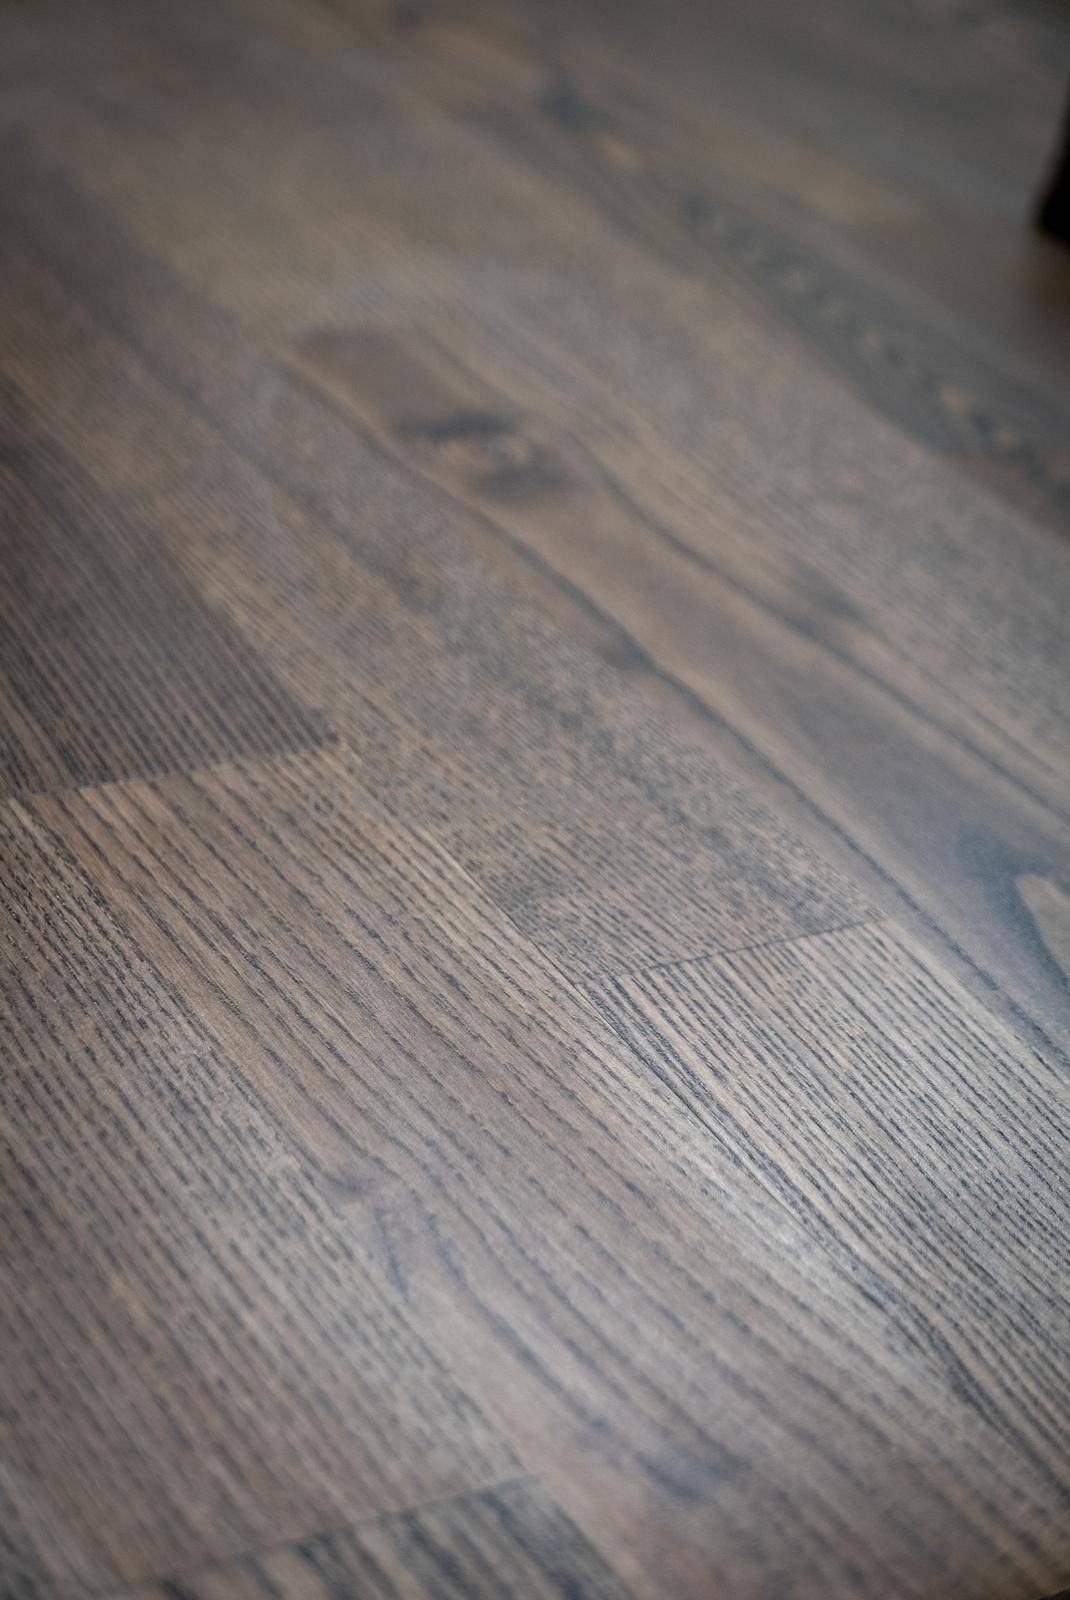 Dark brown wooden parquet floor texture as background.